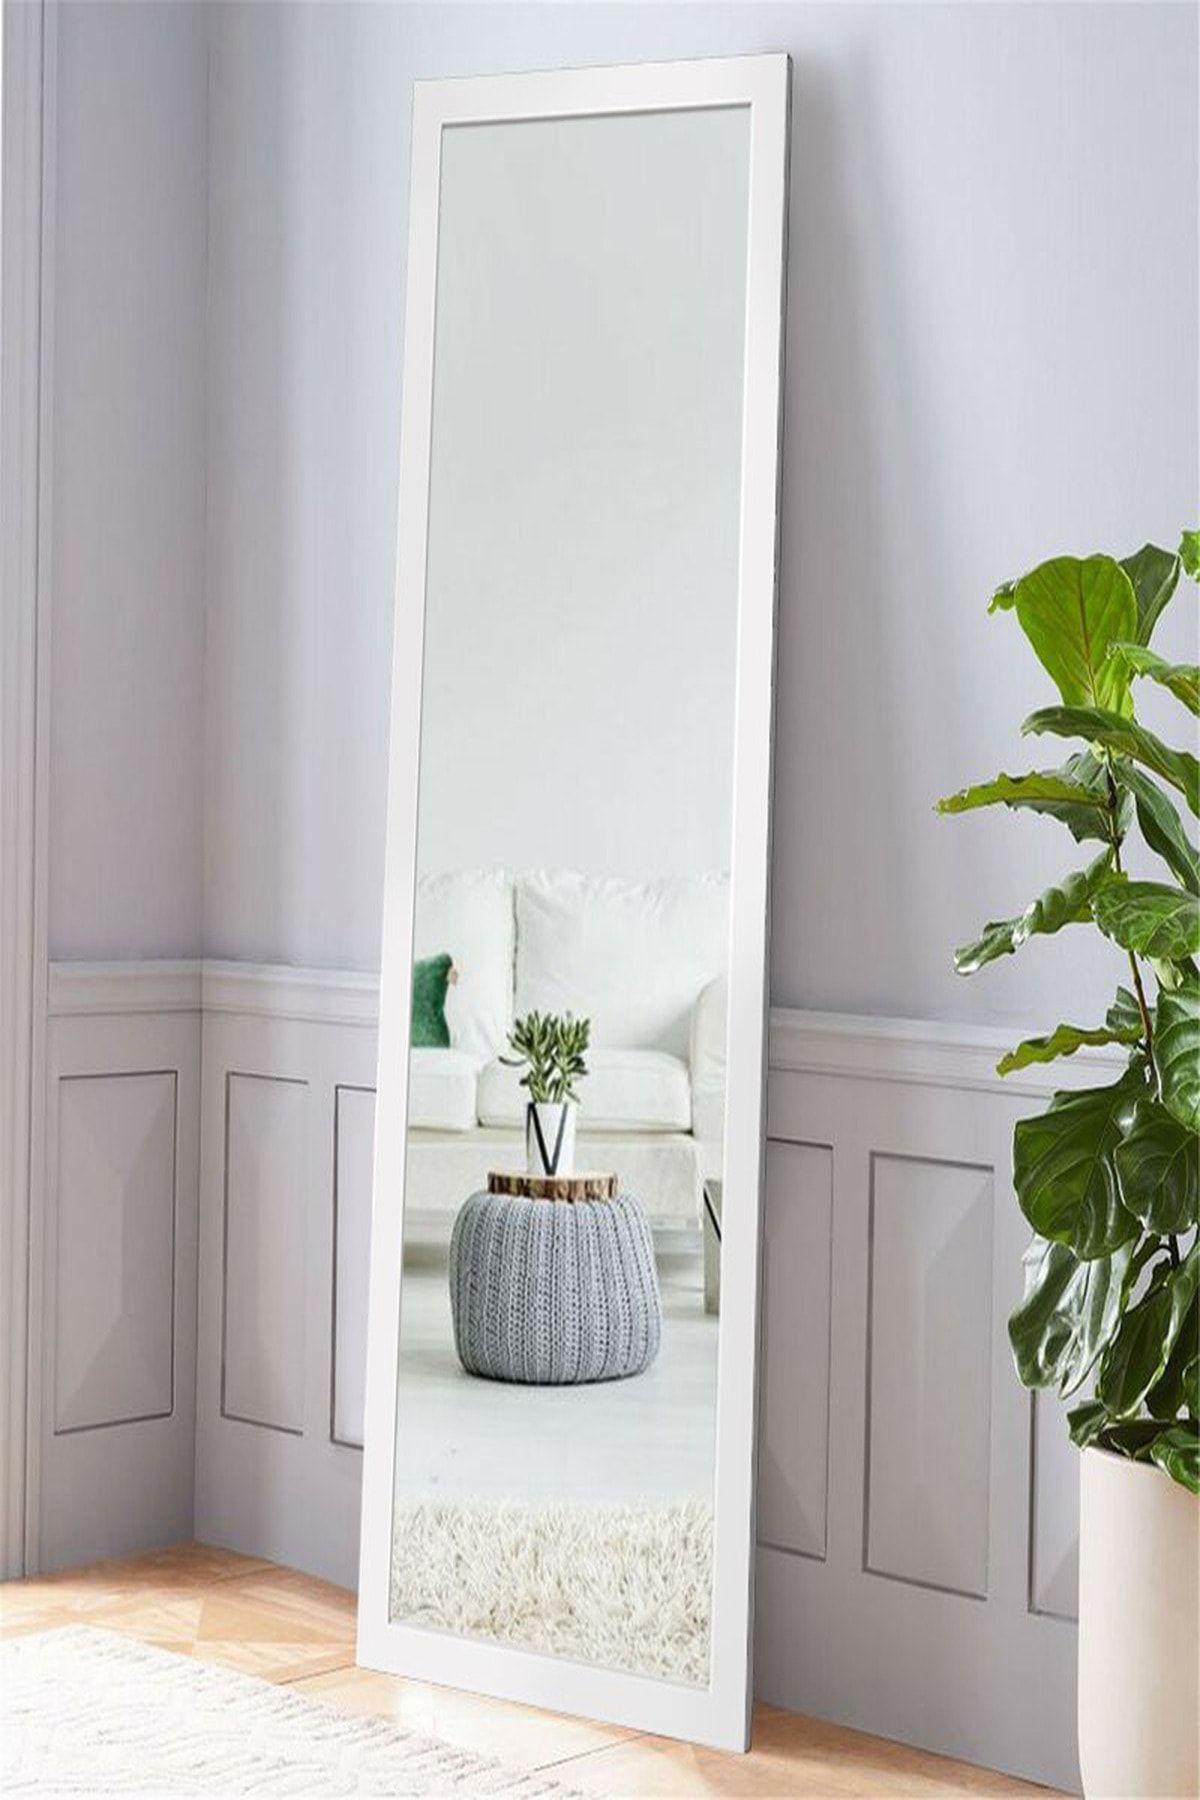 Hüma's Beyaz Ahşap Dekoratif Retro Boy ve Duvar Aynası 160 X 58 cm